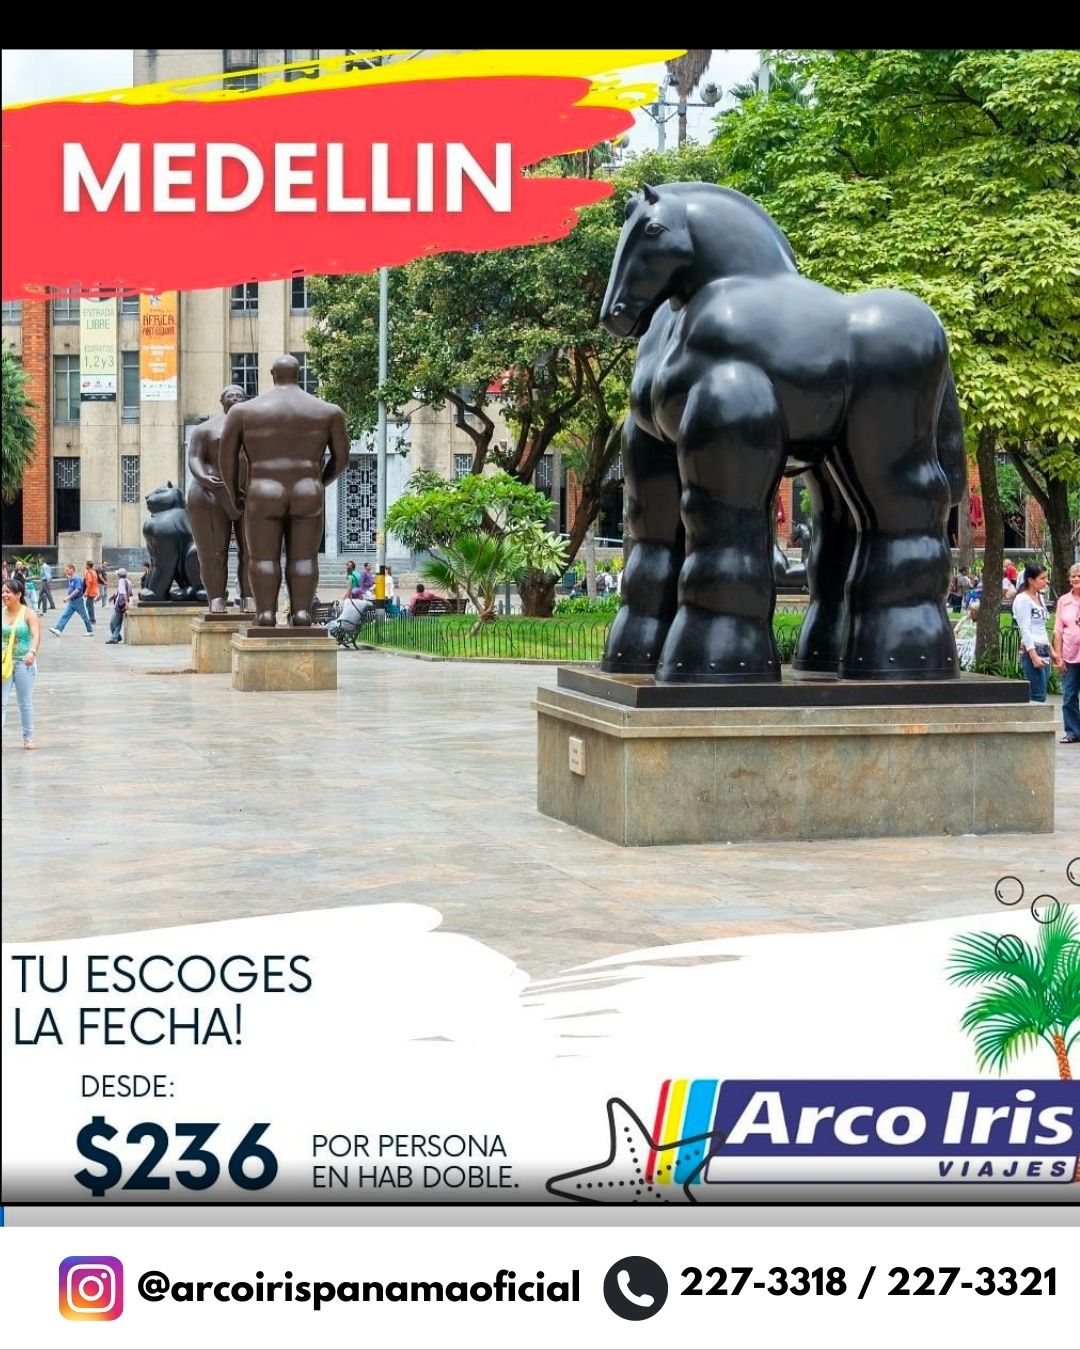 medellin-colombia-arcoiris-viajes